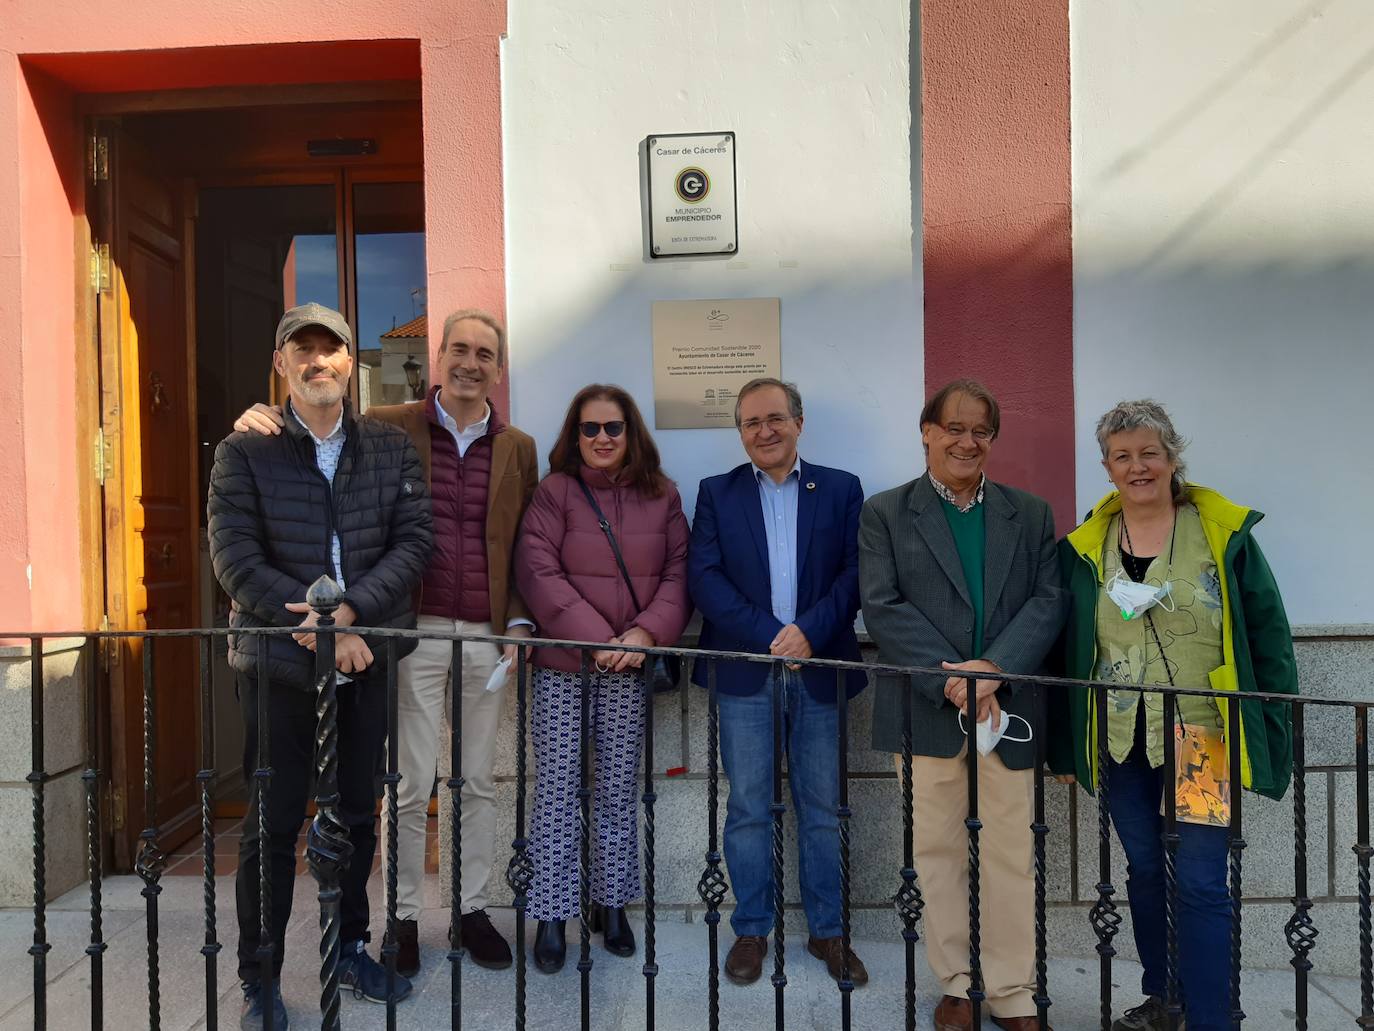 Imagen principal - Casar de Cáceres descubre su placa del Premio Comunidad Sostenible